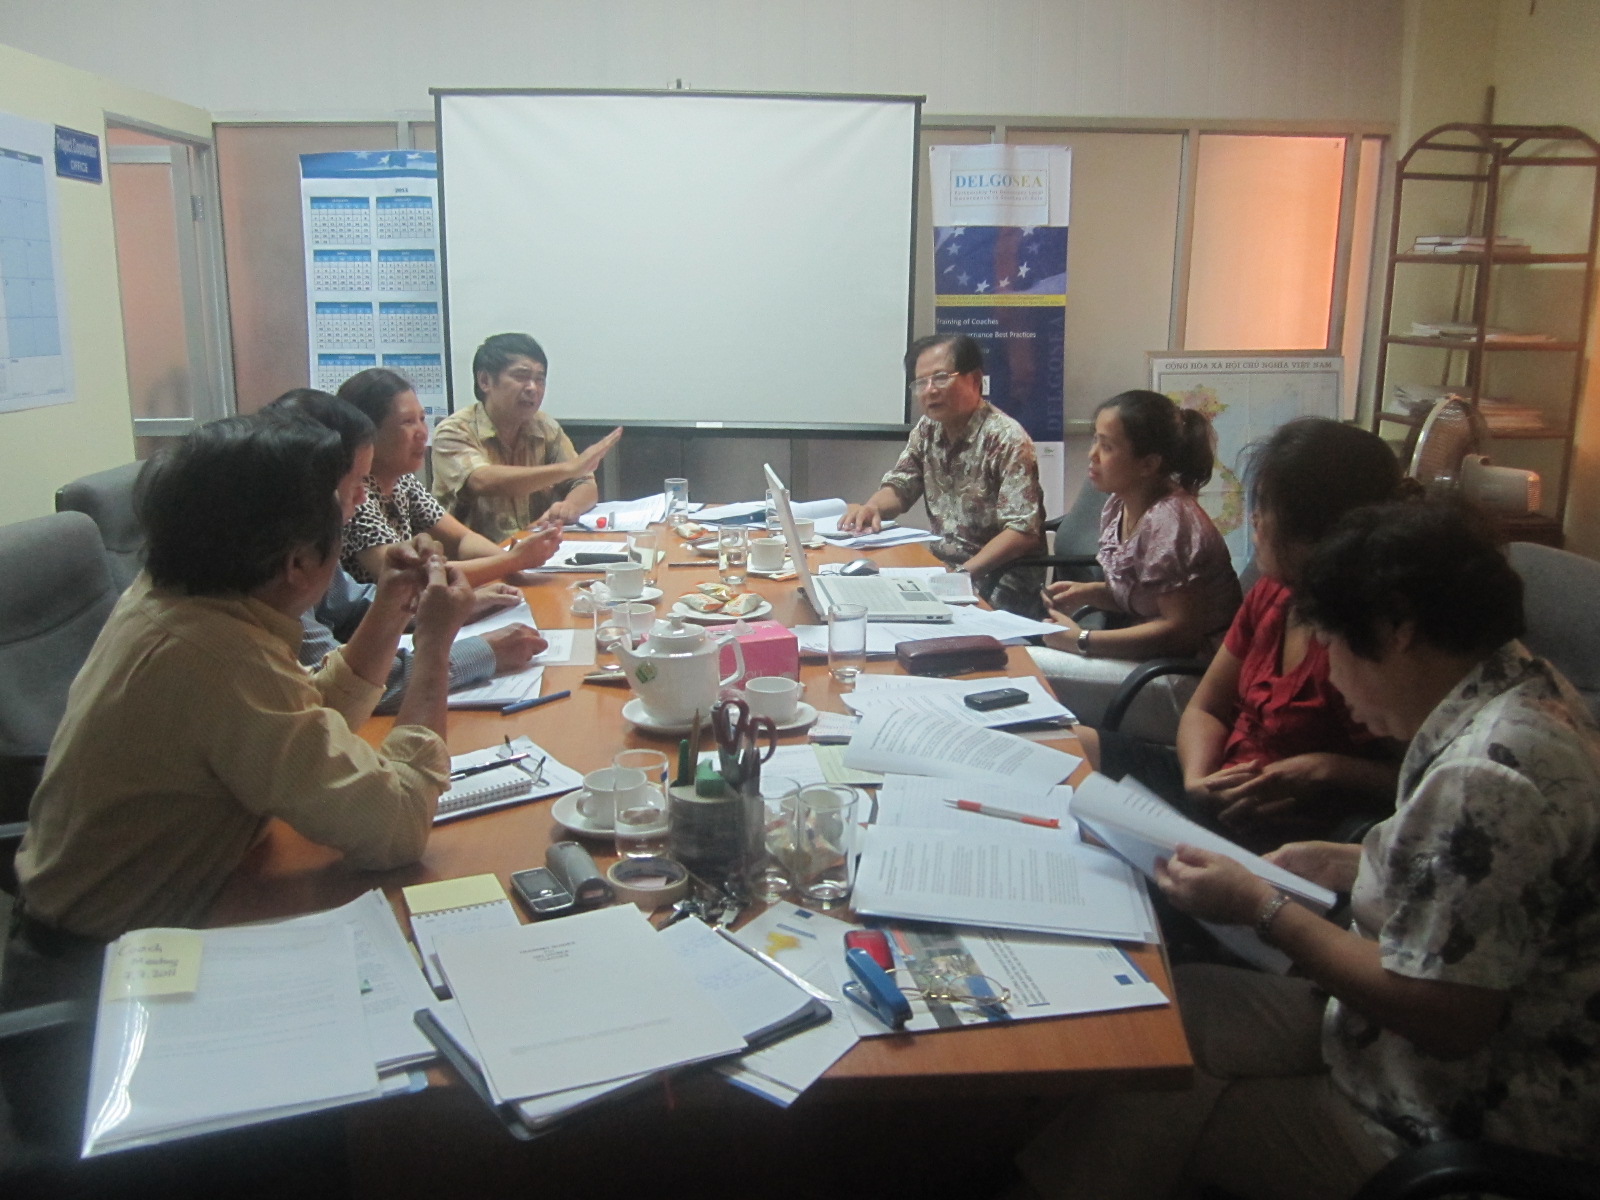  Cuộc họp giữa Lãnh đạo ACVN và Ban Điều phối, chuyên gia dự án Delgosea